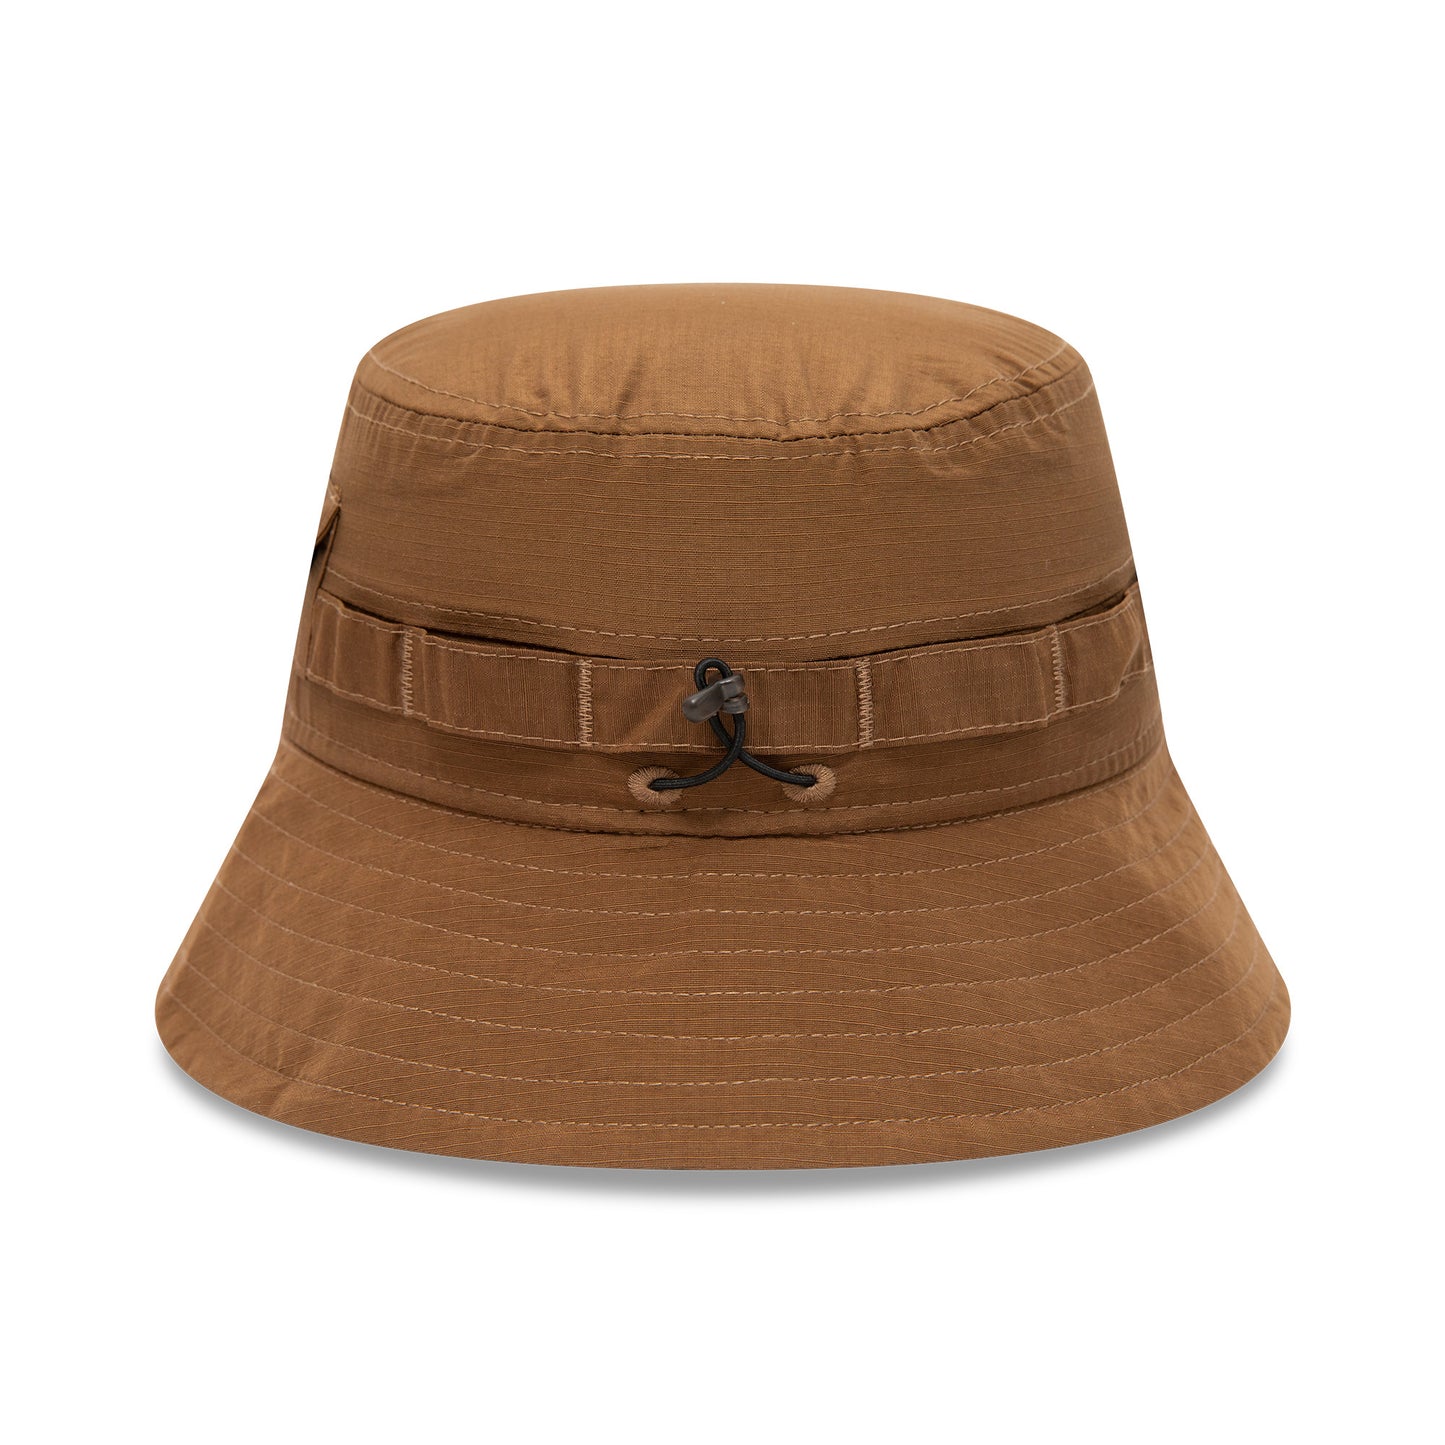 Packable Adventure Hat Ne Outdoor - Tan - Headz Up 